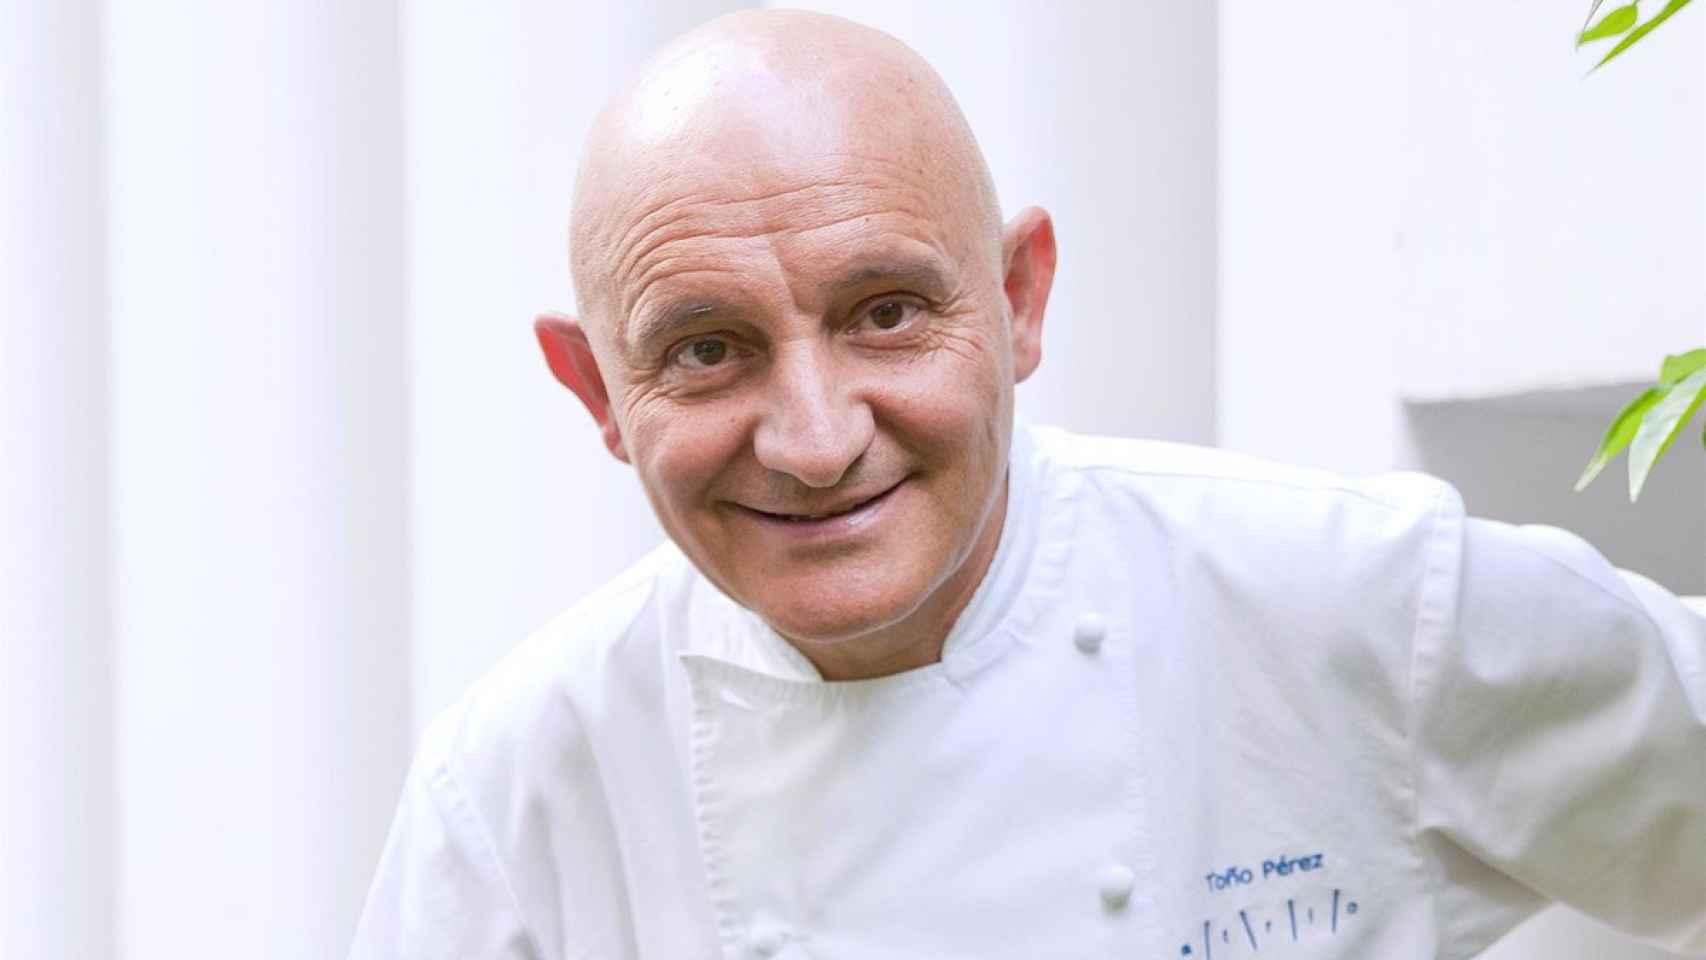 Toño Pérez, cocinero español con tres Estrellas Michelin